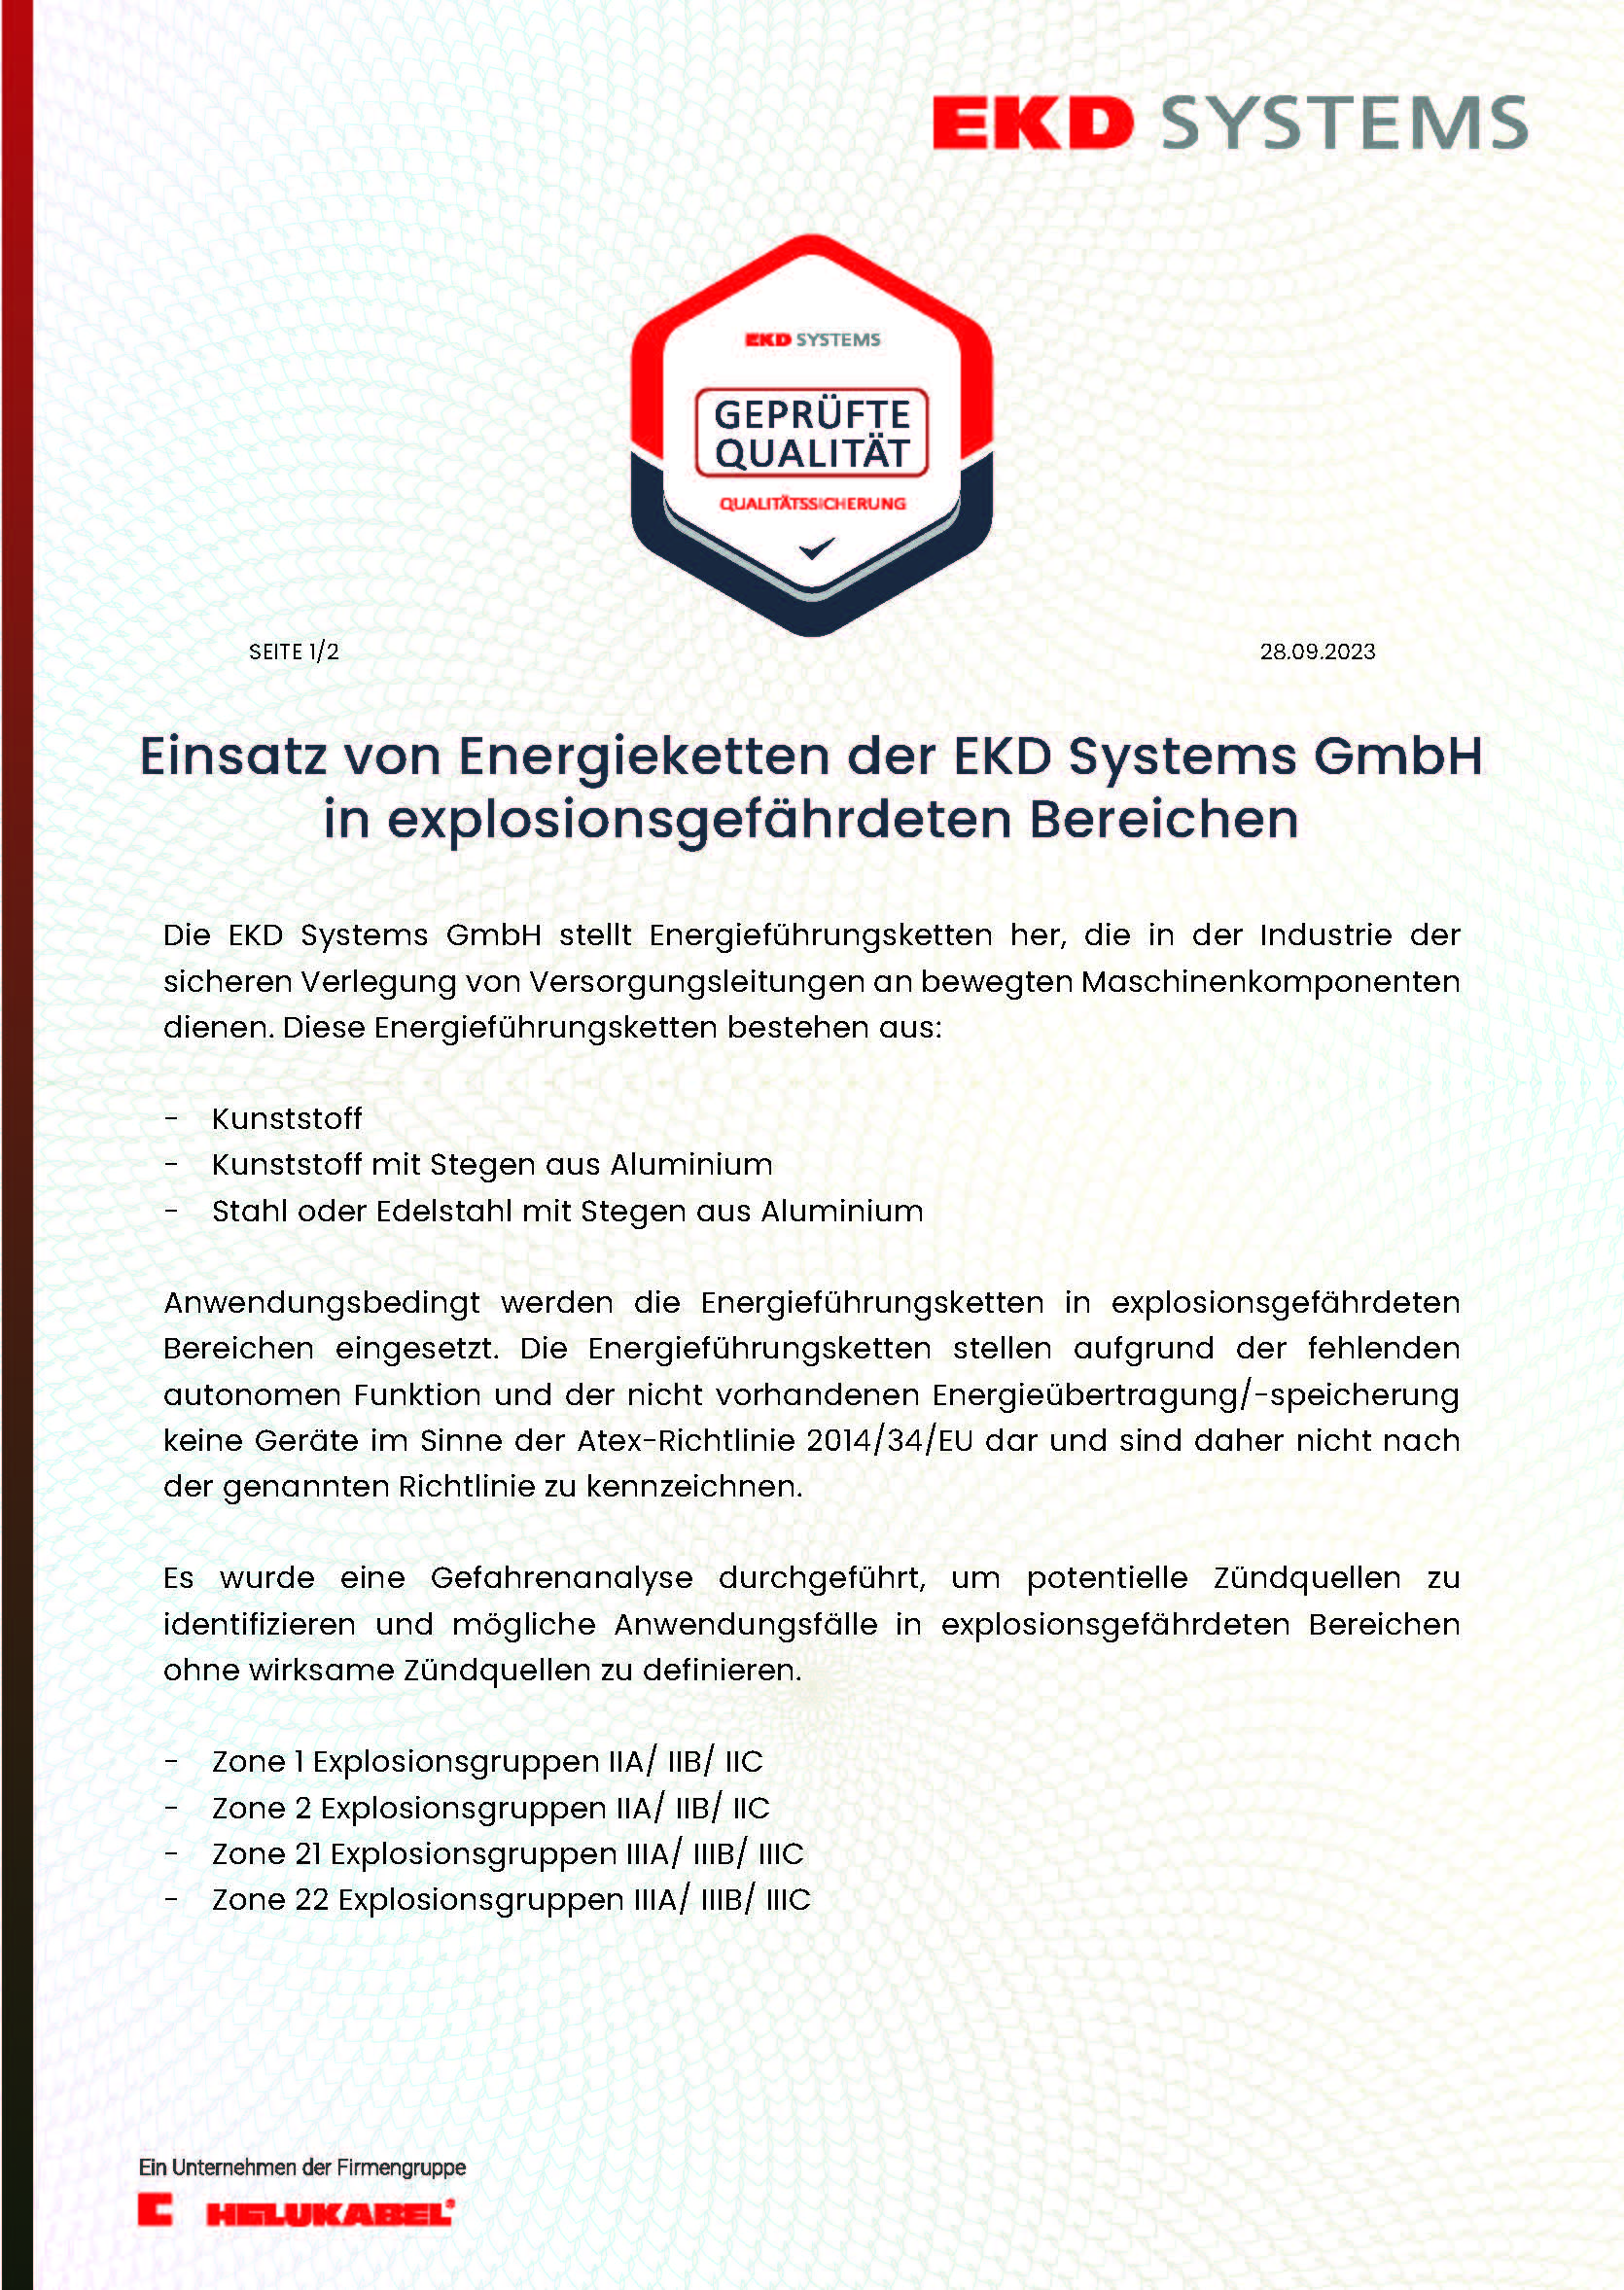 Einsatz von Energieketten der EKD Systems GmbH in explosionsgefährdeten Bereichen